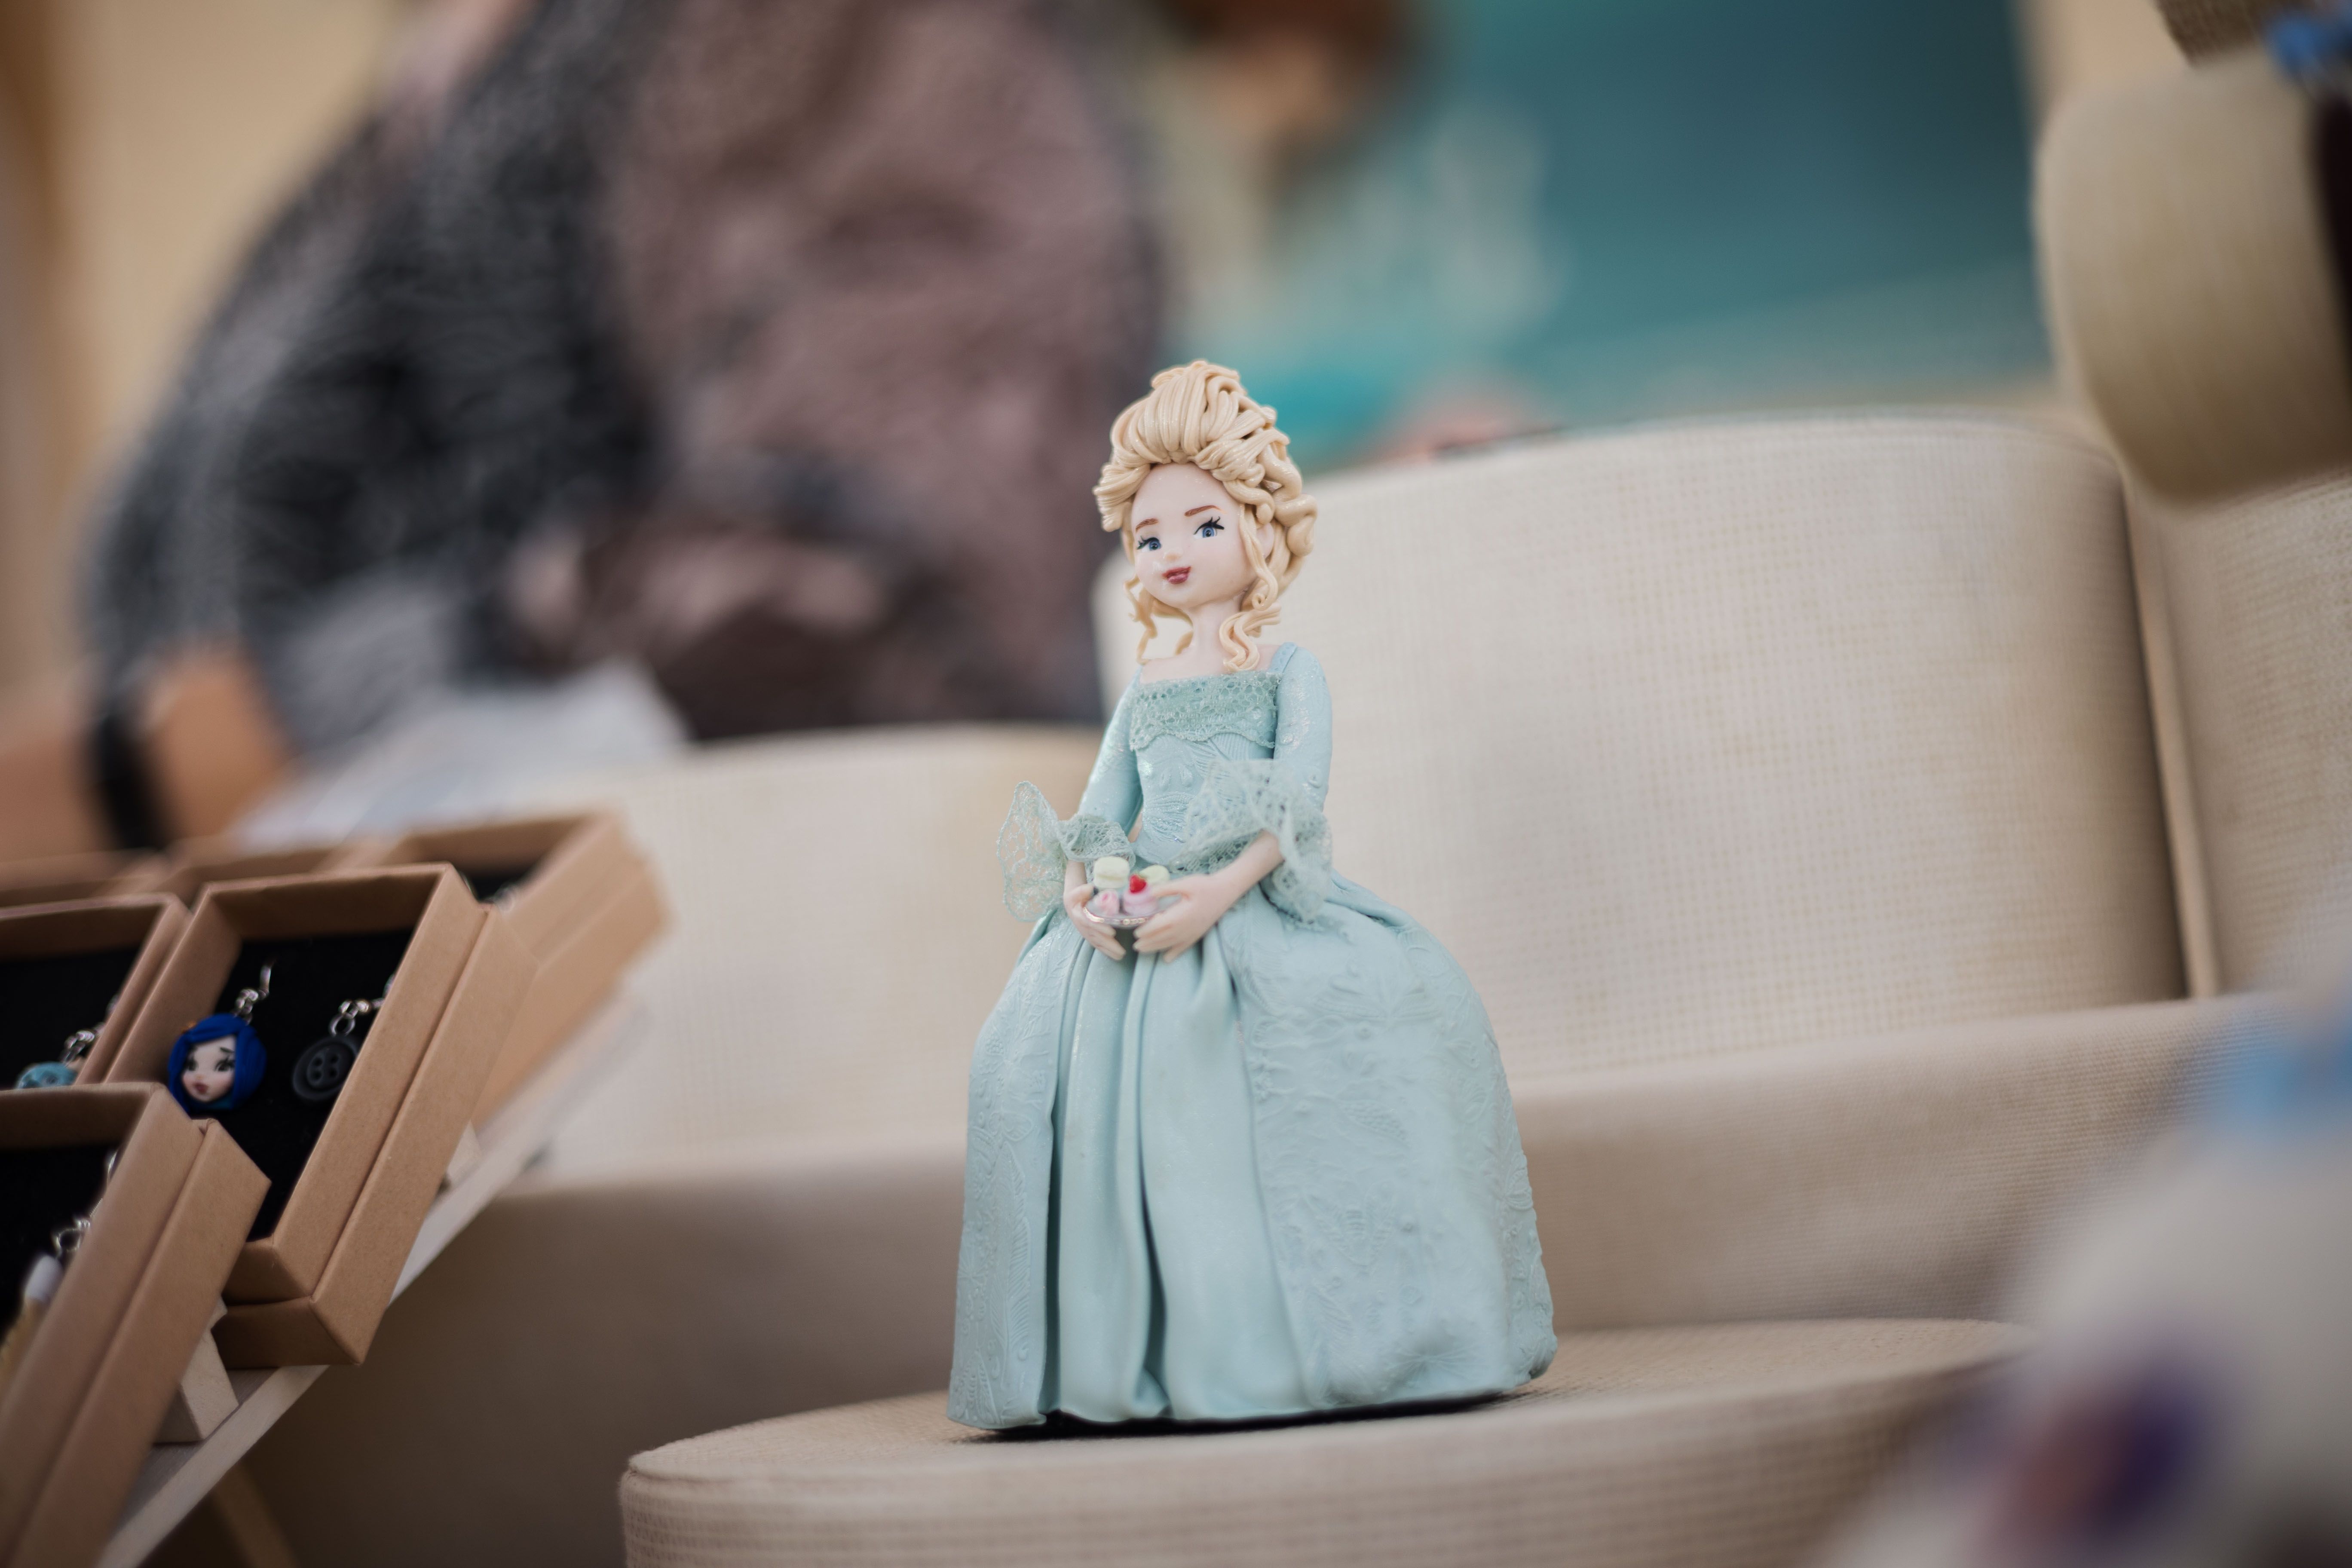 Figura de Elsa, una de las creaciones de Deseo concedido.